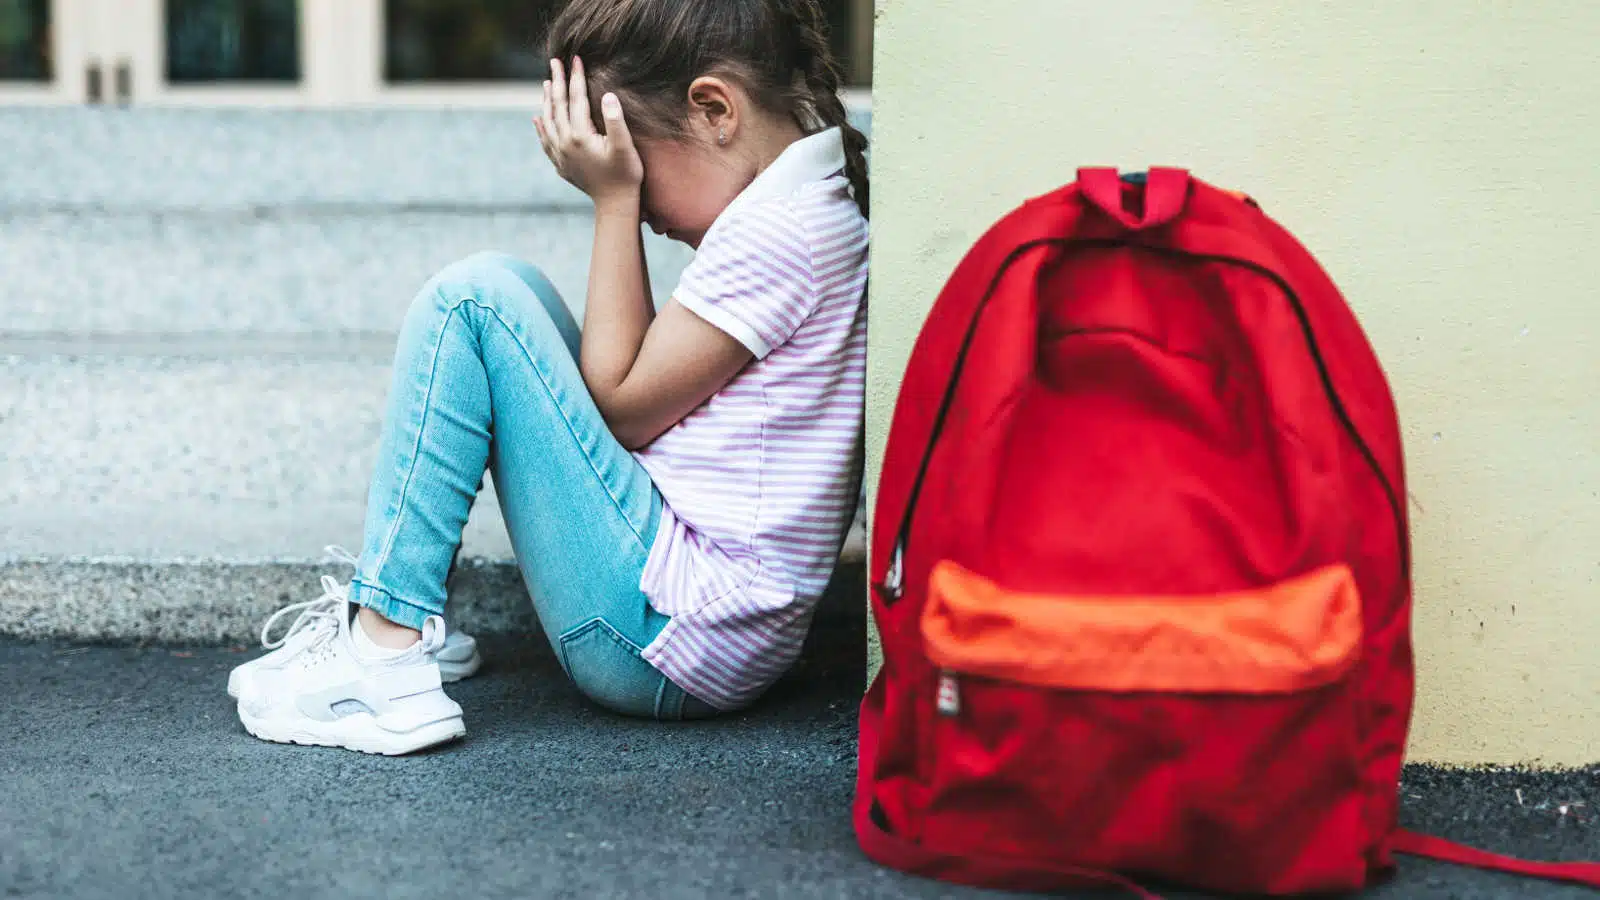 Fobia scolastica: non un capriccio, ma un disturbo di cui parlare